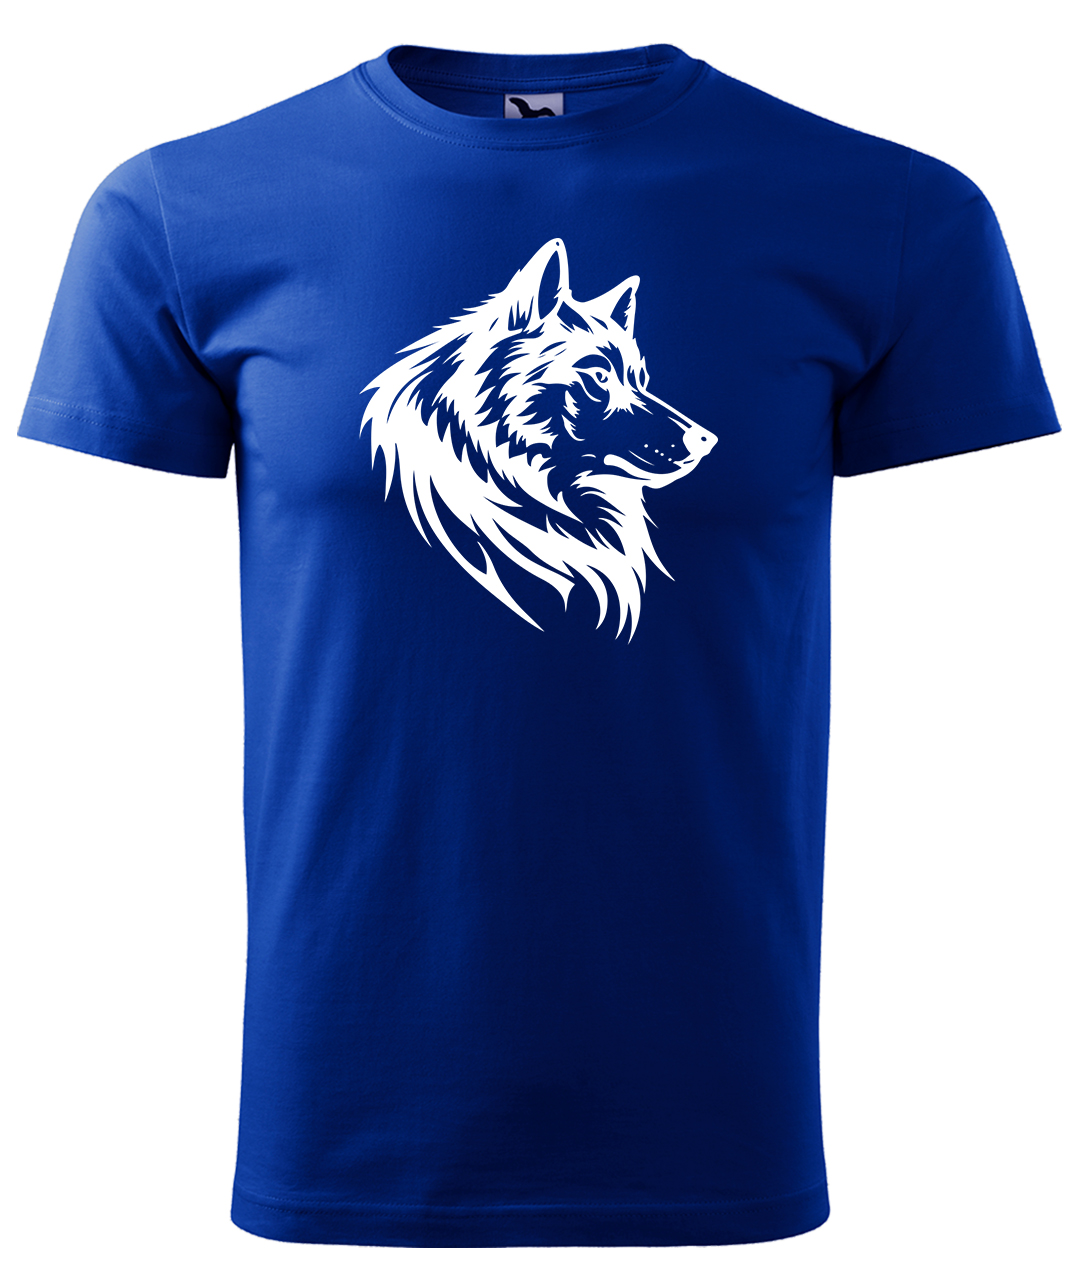 Dětské tričko s vlkem - Wolf Velikost: 4 roky / 110 cm, Barva: Královská modrá (05), Délka rukávu: Krátký rukáv